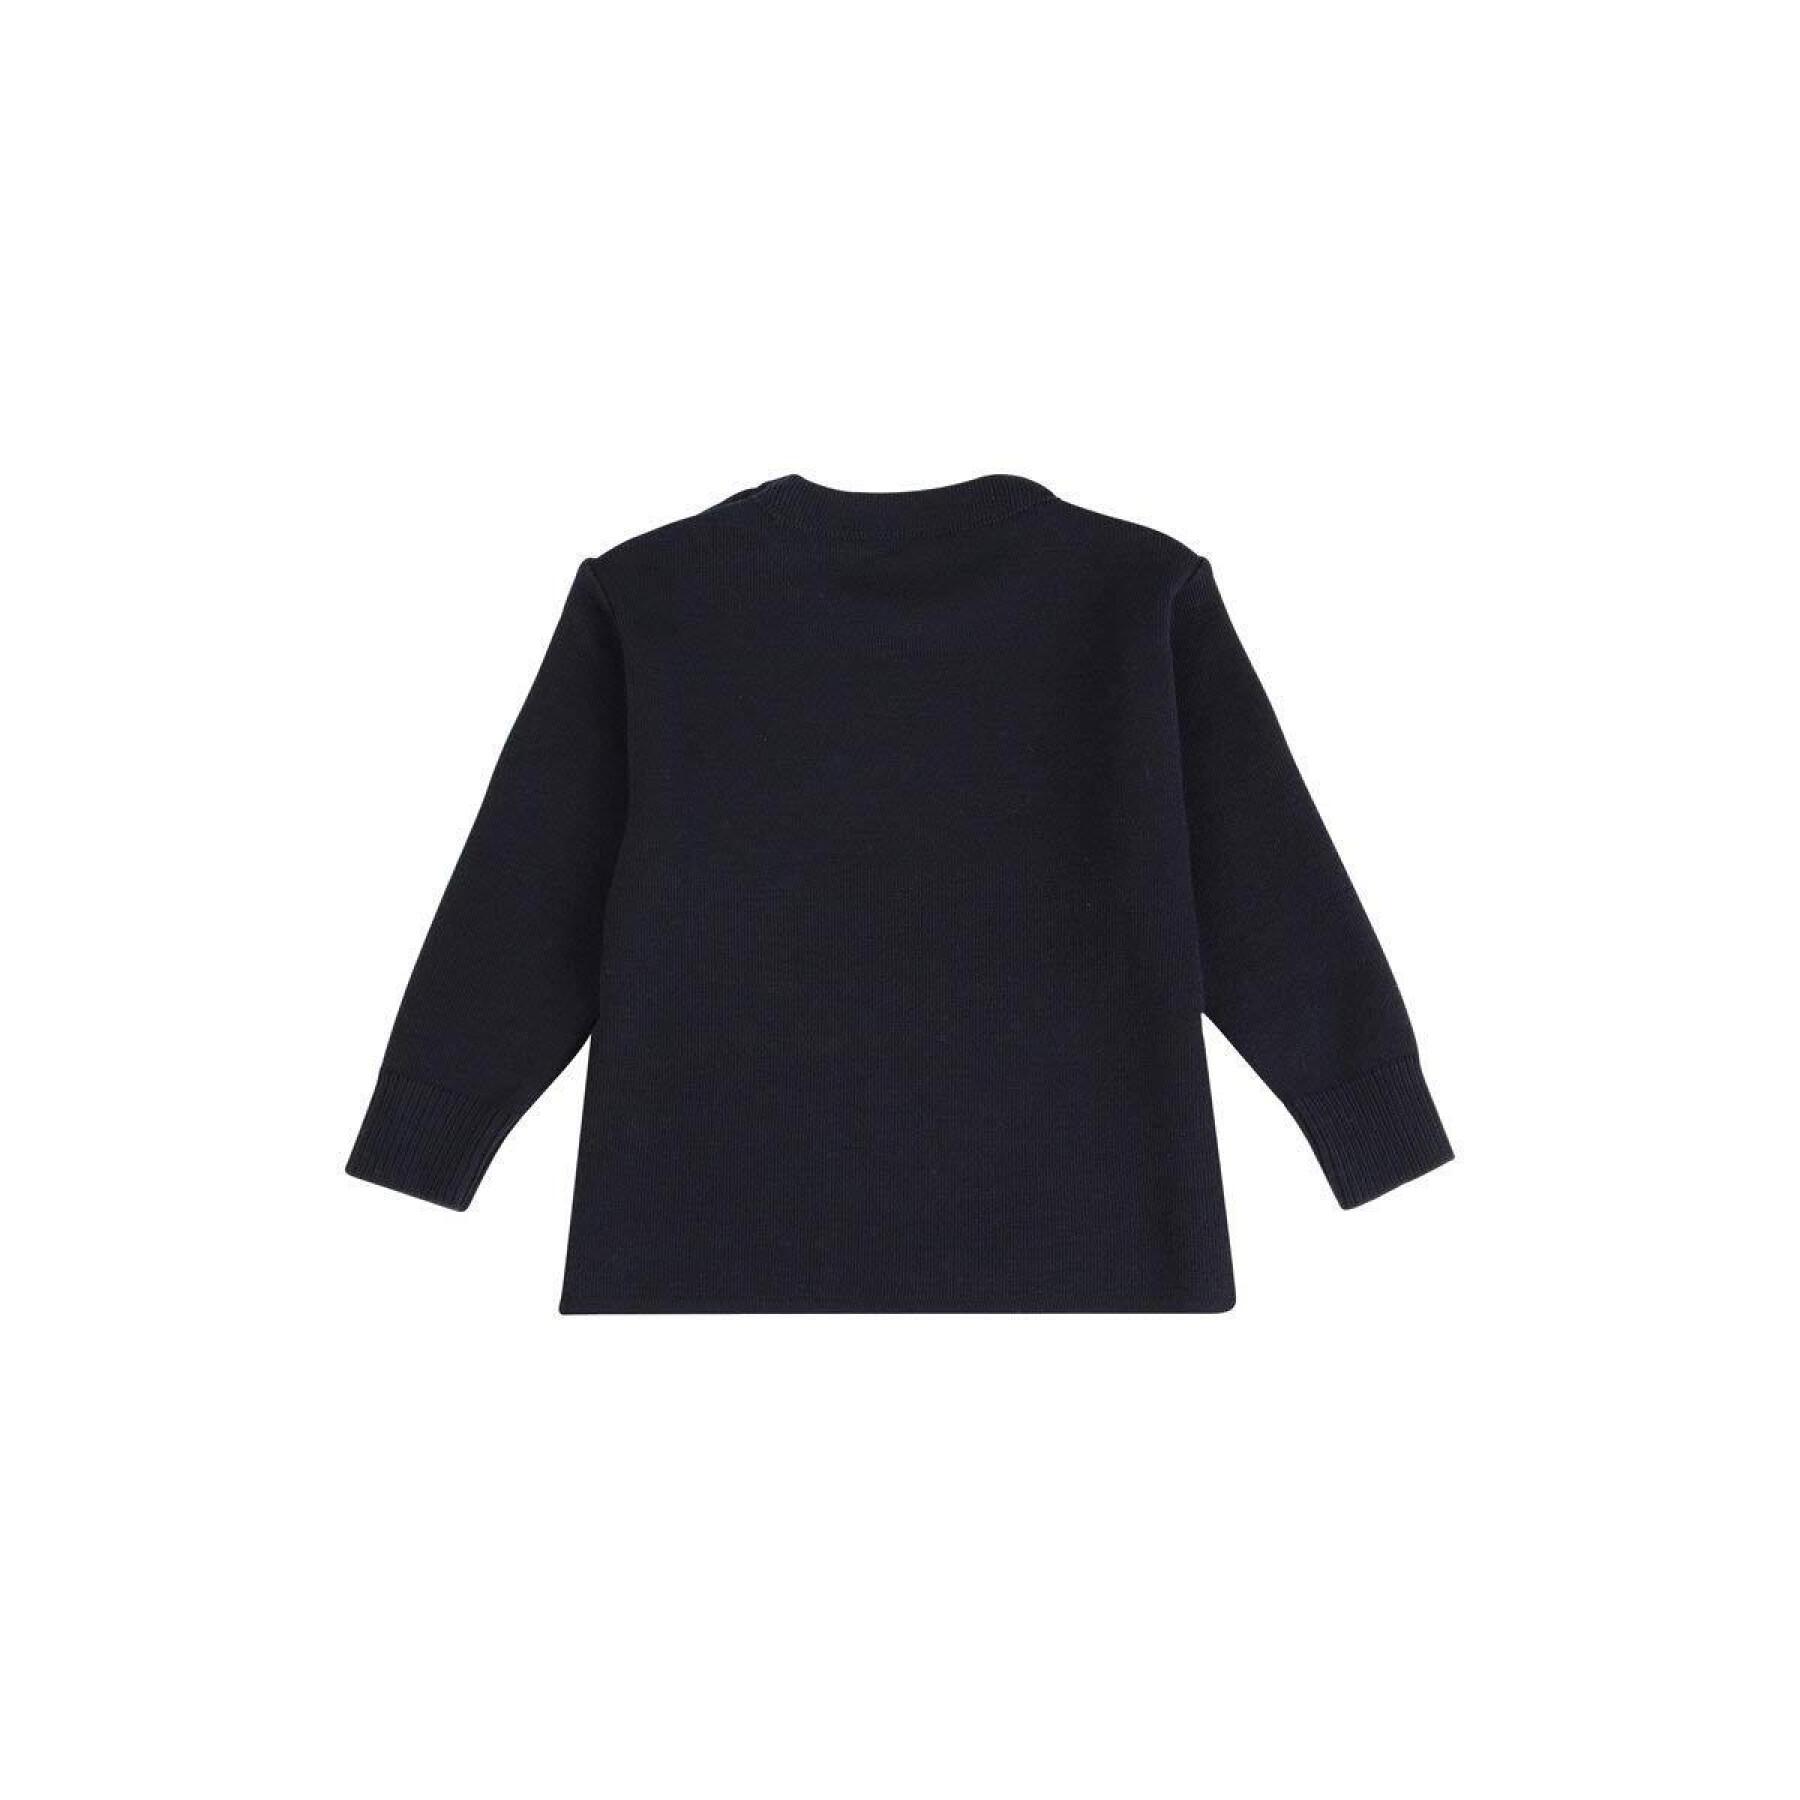 Children's sailor sweater Armor-Lux briac